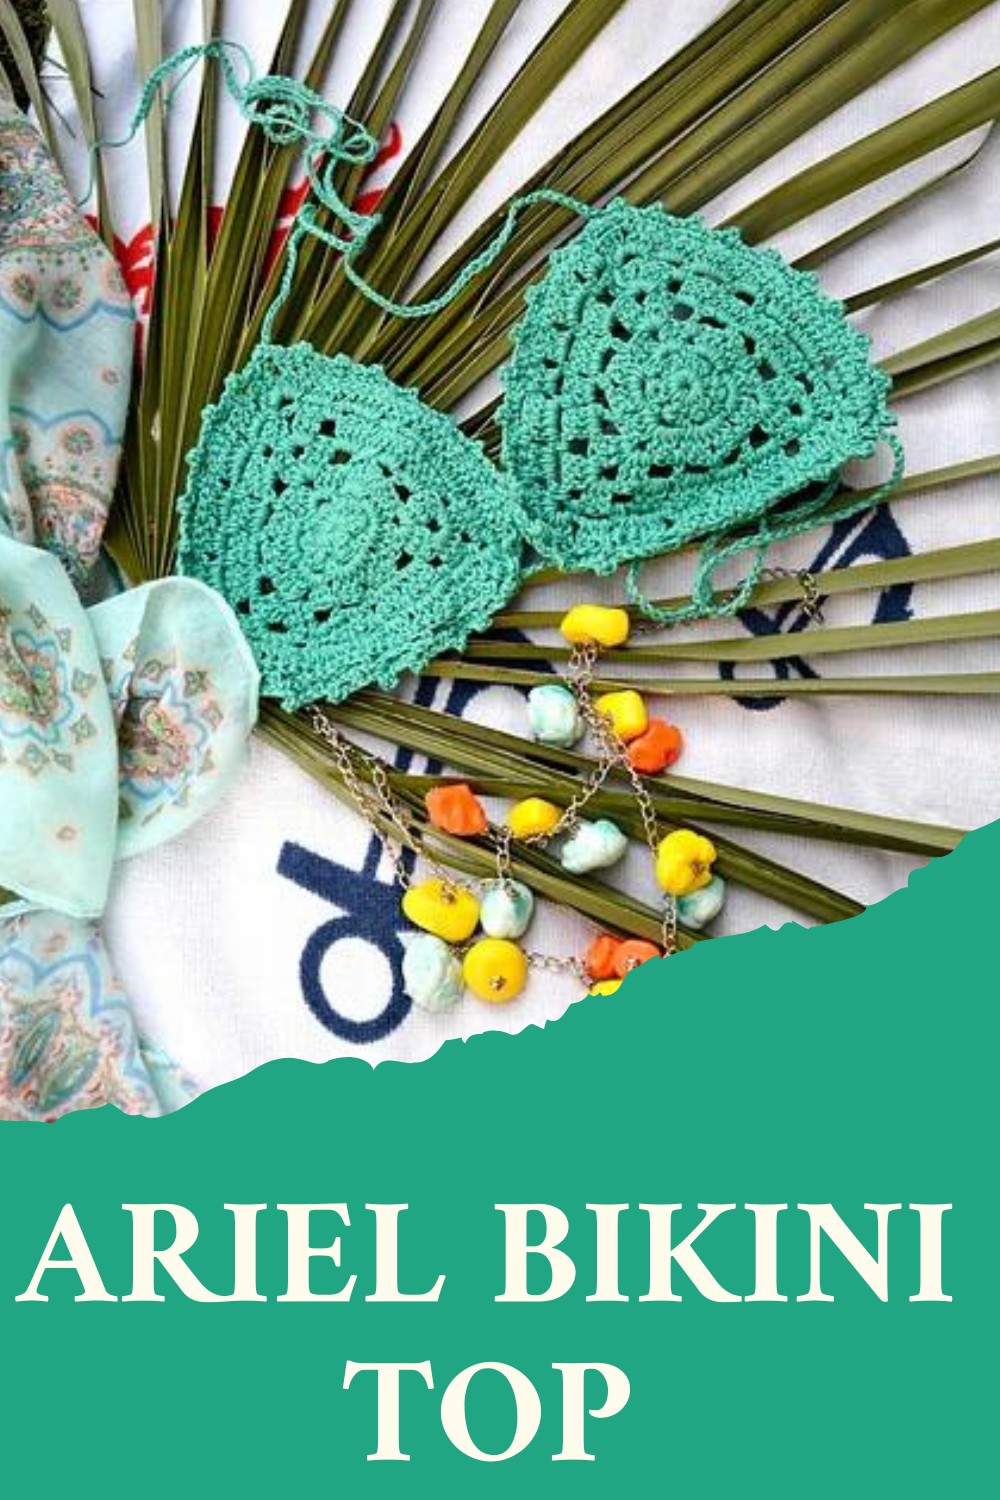 Ariel Bikini Top